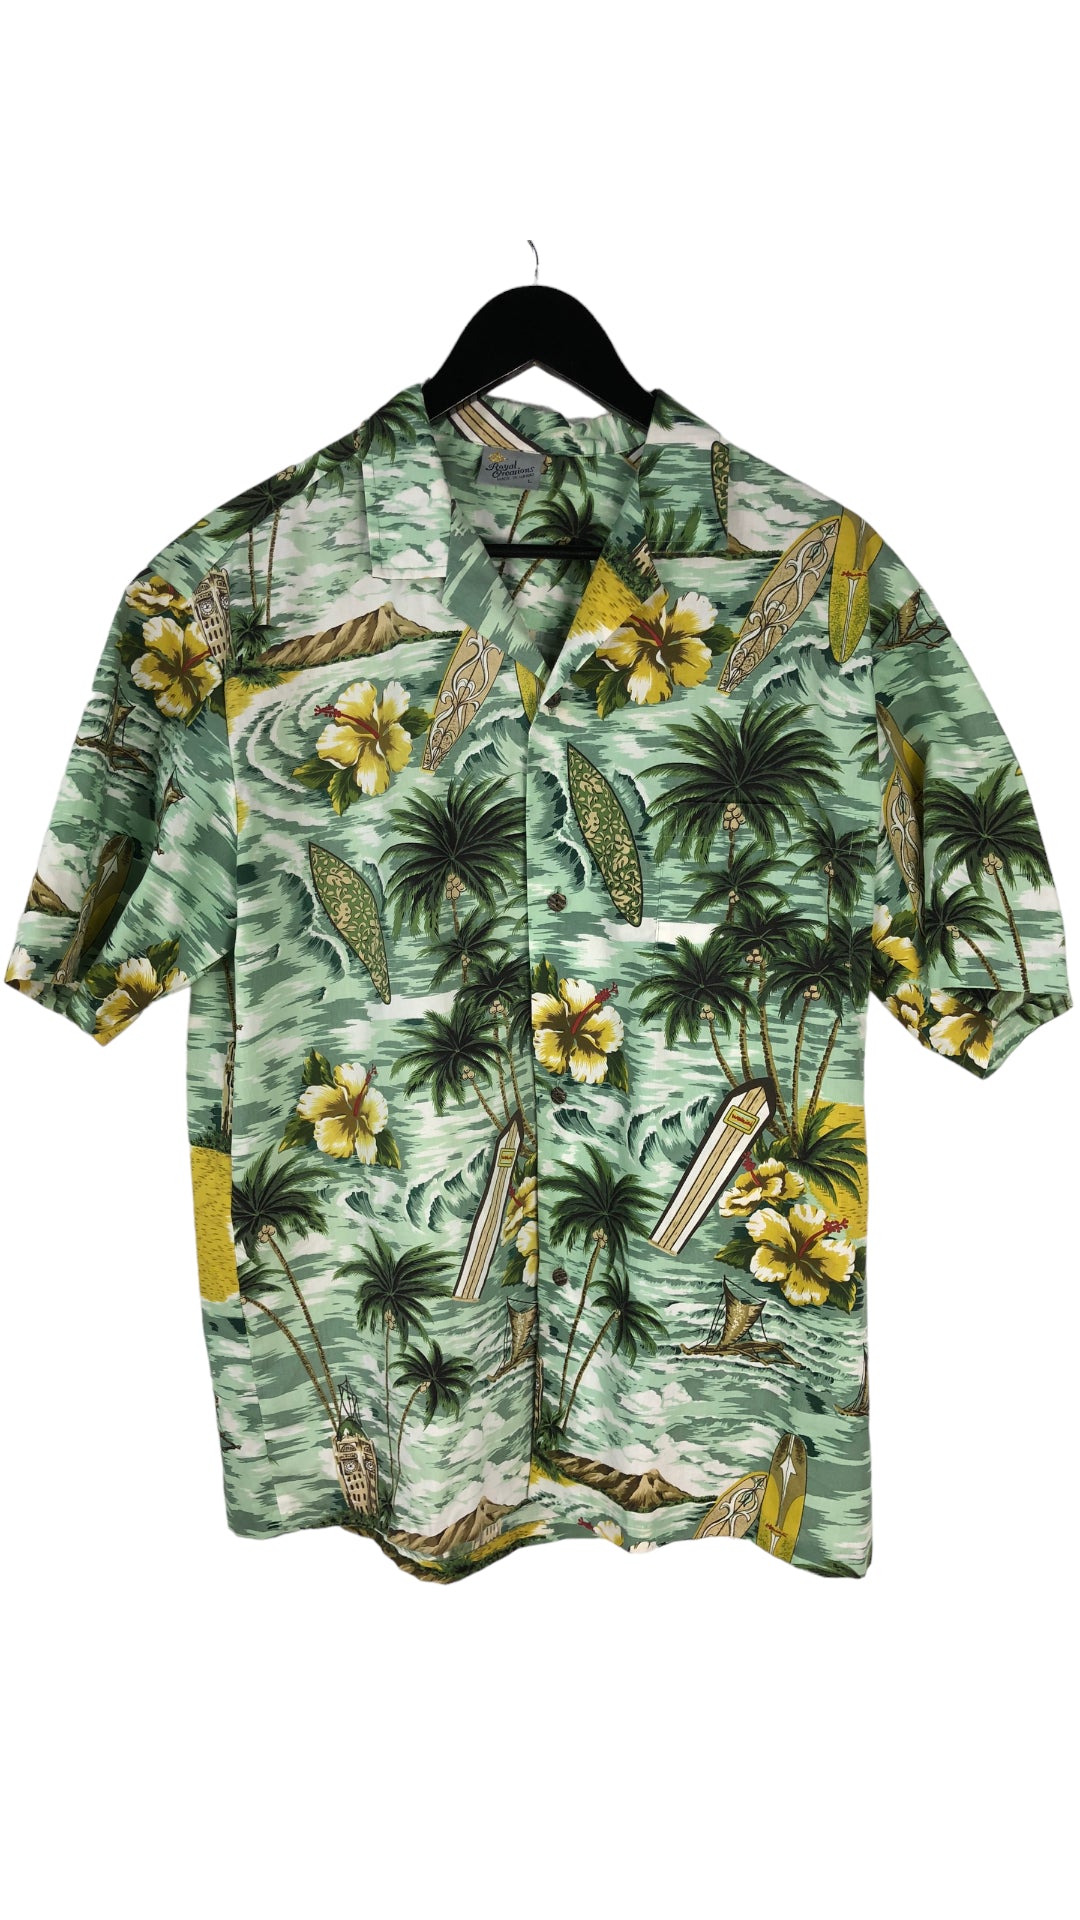 VTG Tropical Hawaii Button Up Shirt Sz L